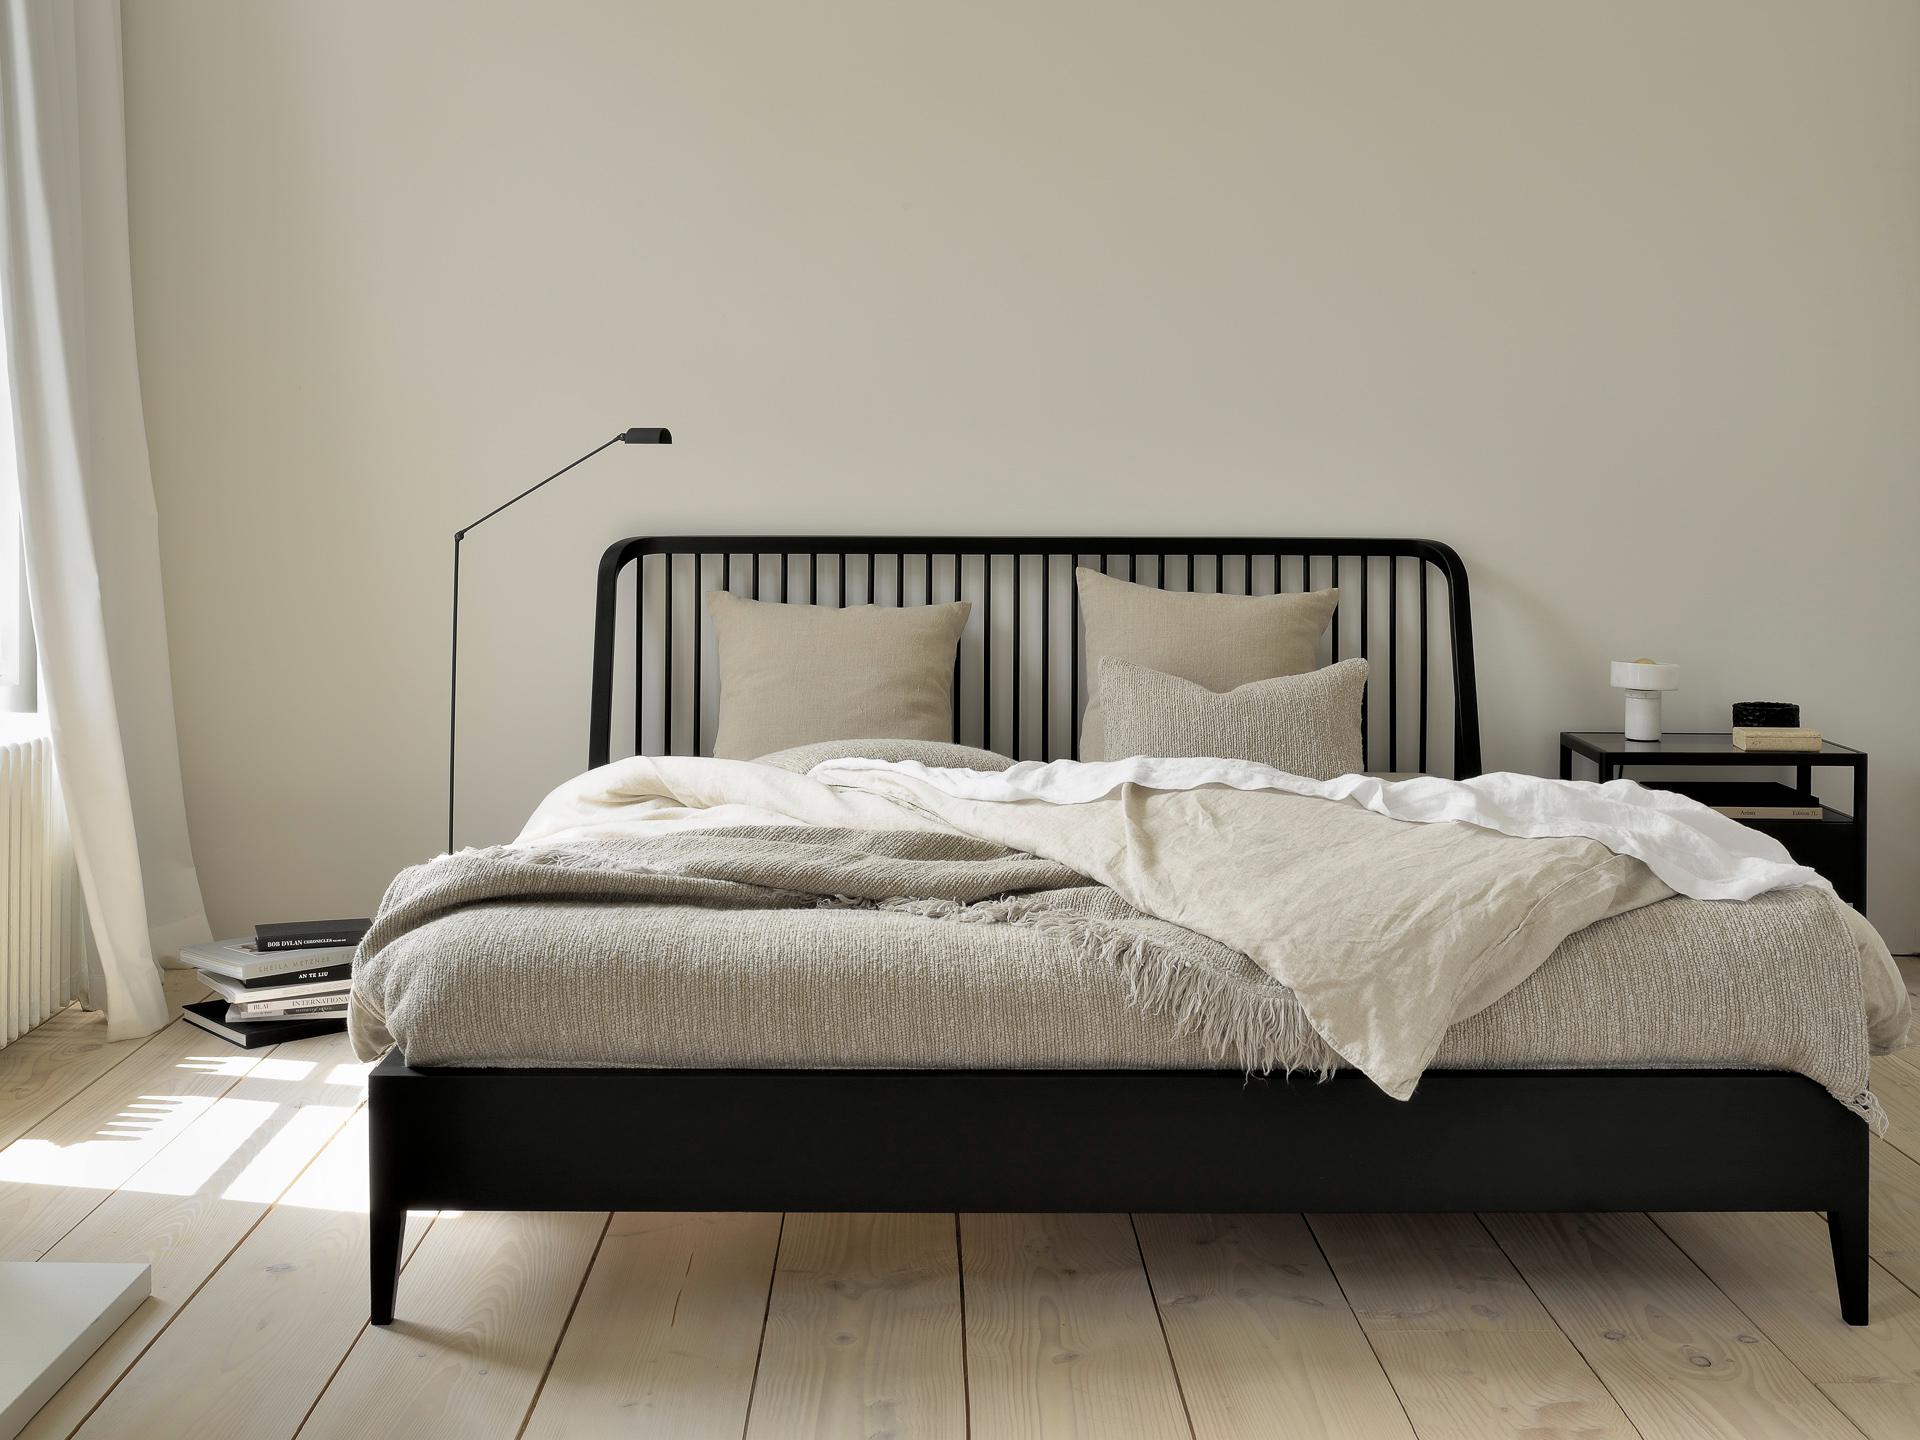 Bedroom set with black spindle bed | Live Light